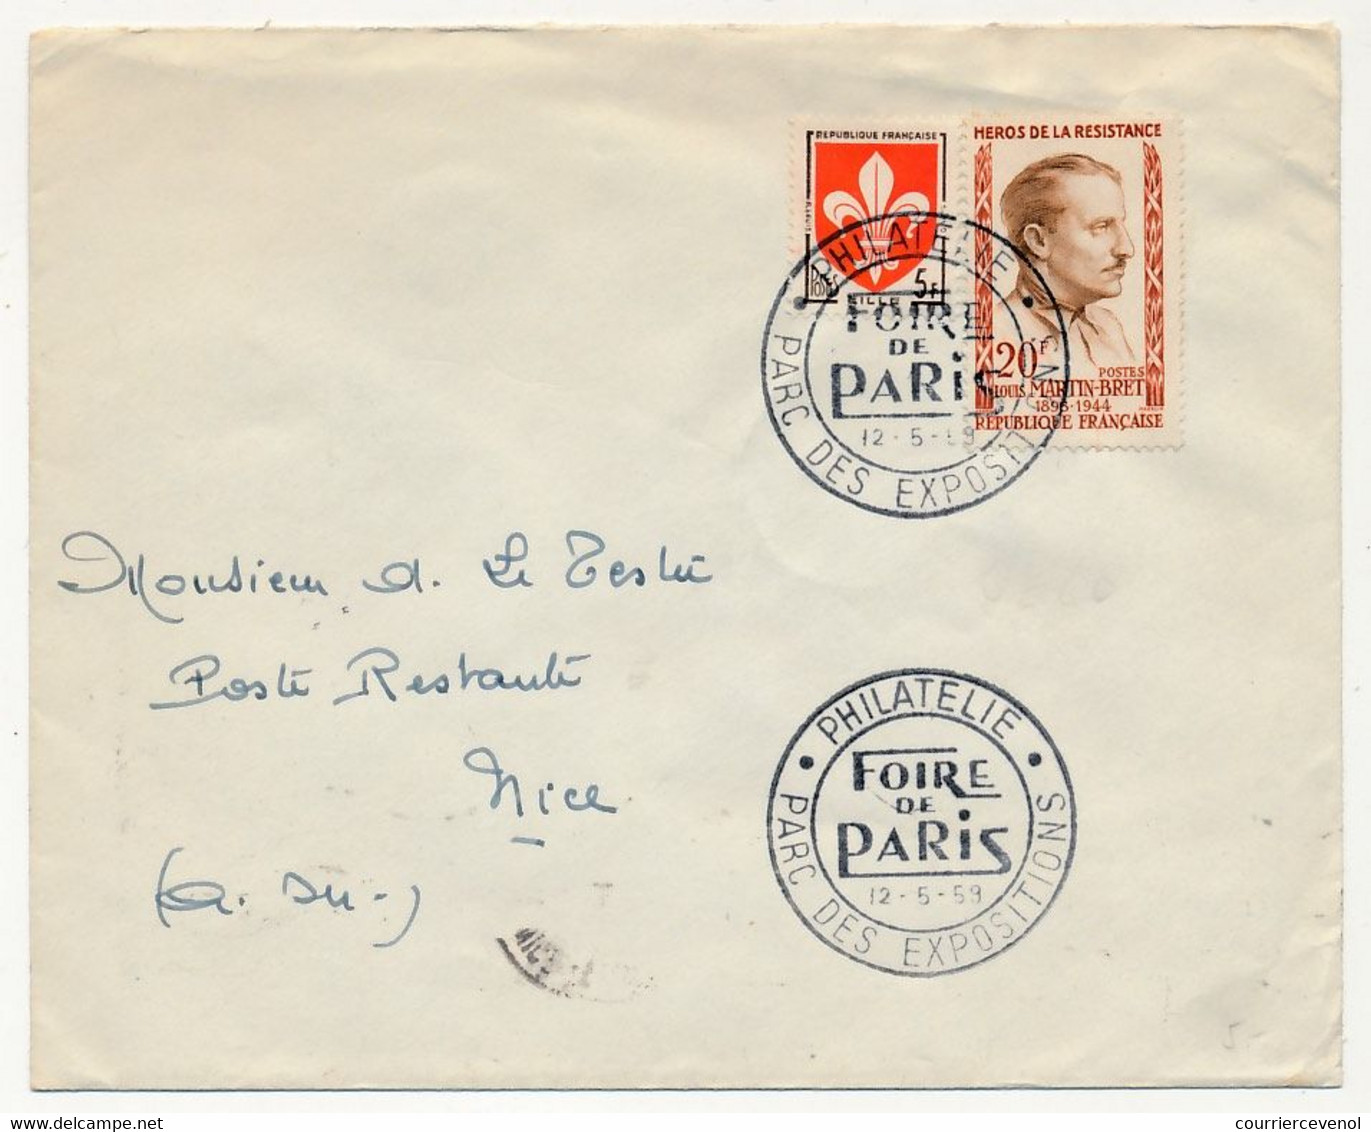 Enveloppe Affr.composé 20F Louis Martin Bret + Blason Lille - Obl Temporaire "Philatélie Foire De Paris" PARIS 12/5/1959 - Cachets Commémoratifs